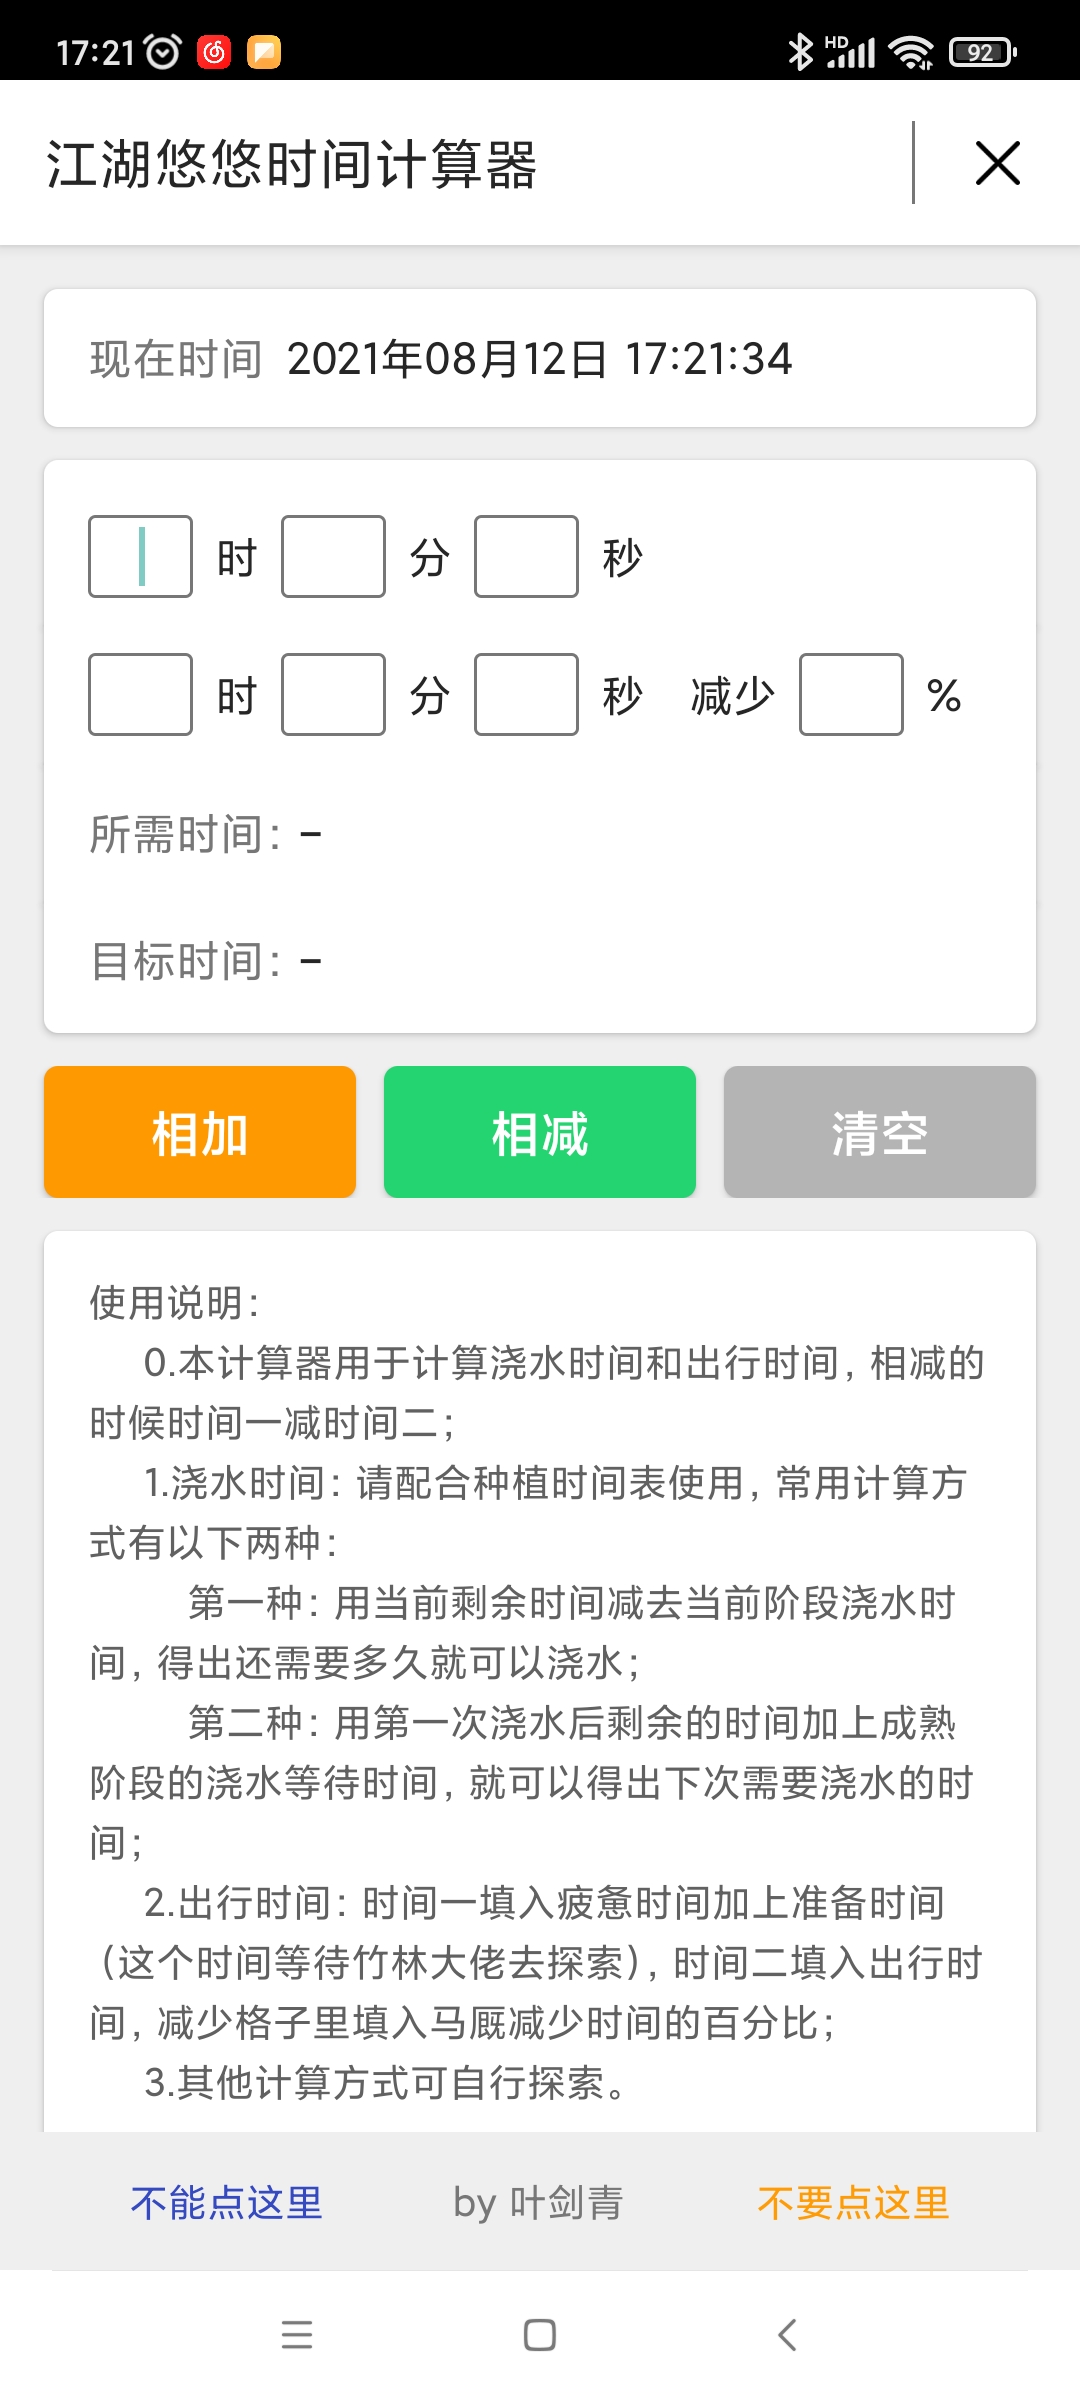 江湖悠悠时间计算器安卓版 V1.0